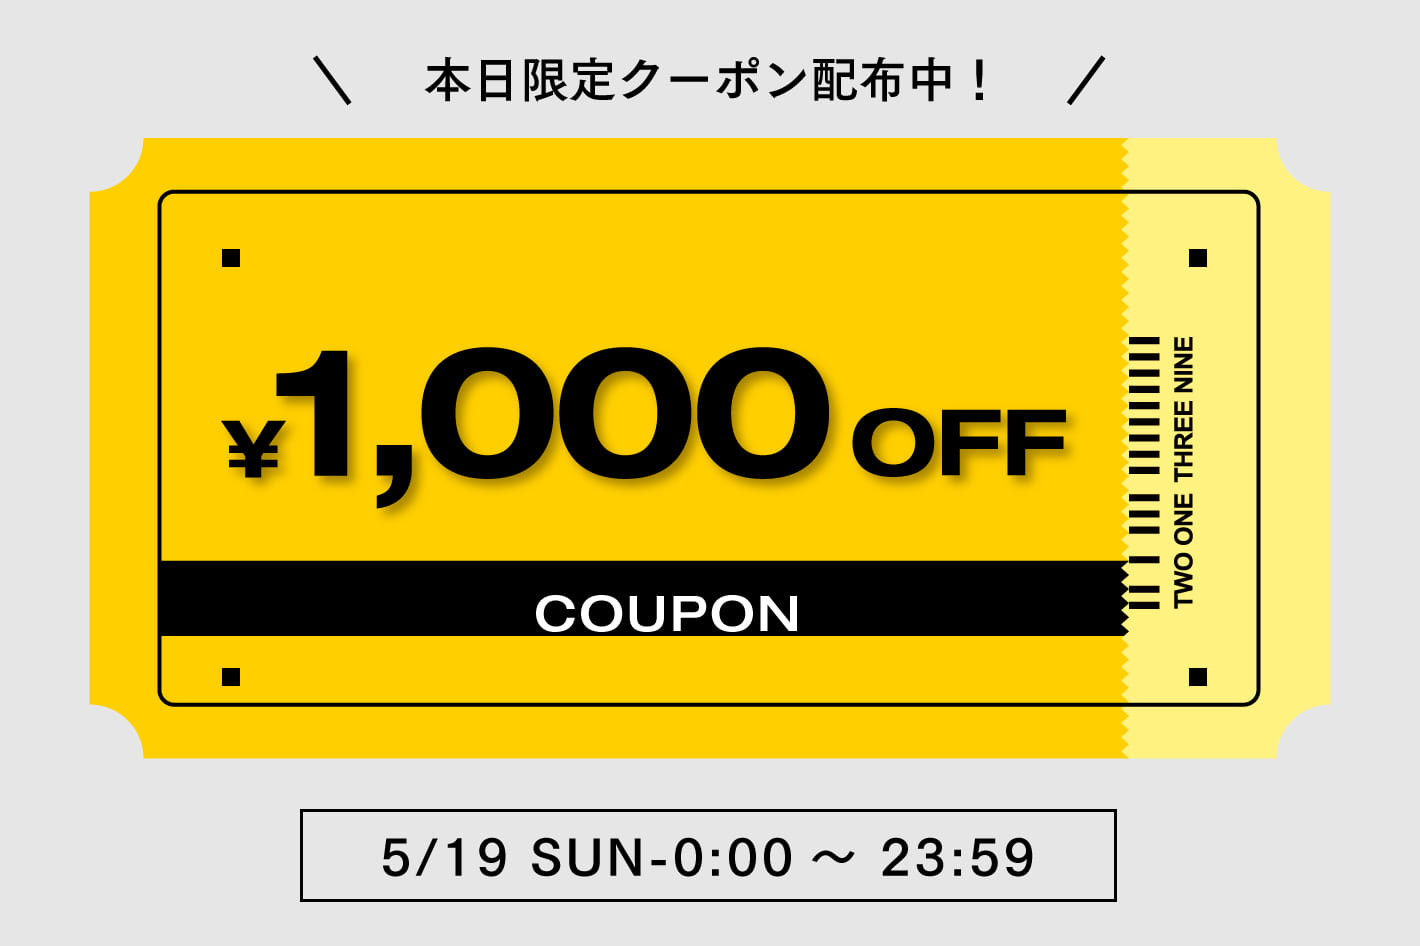 【COLONY 2139】1,000円OFFクーポン